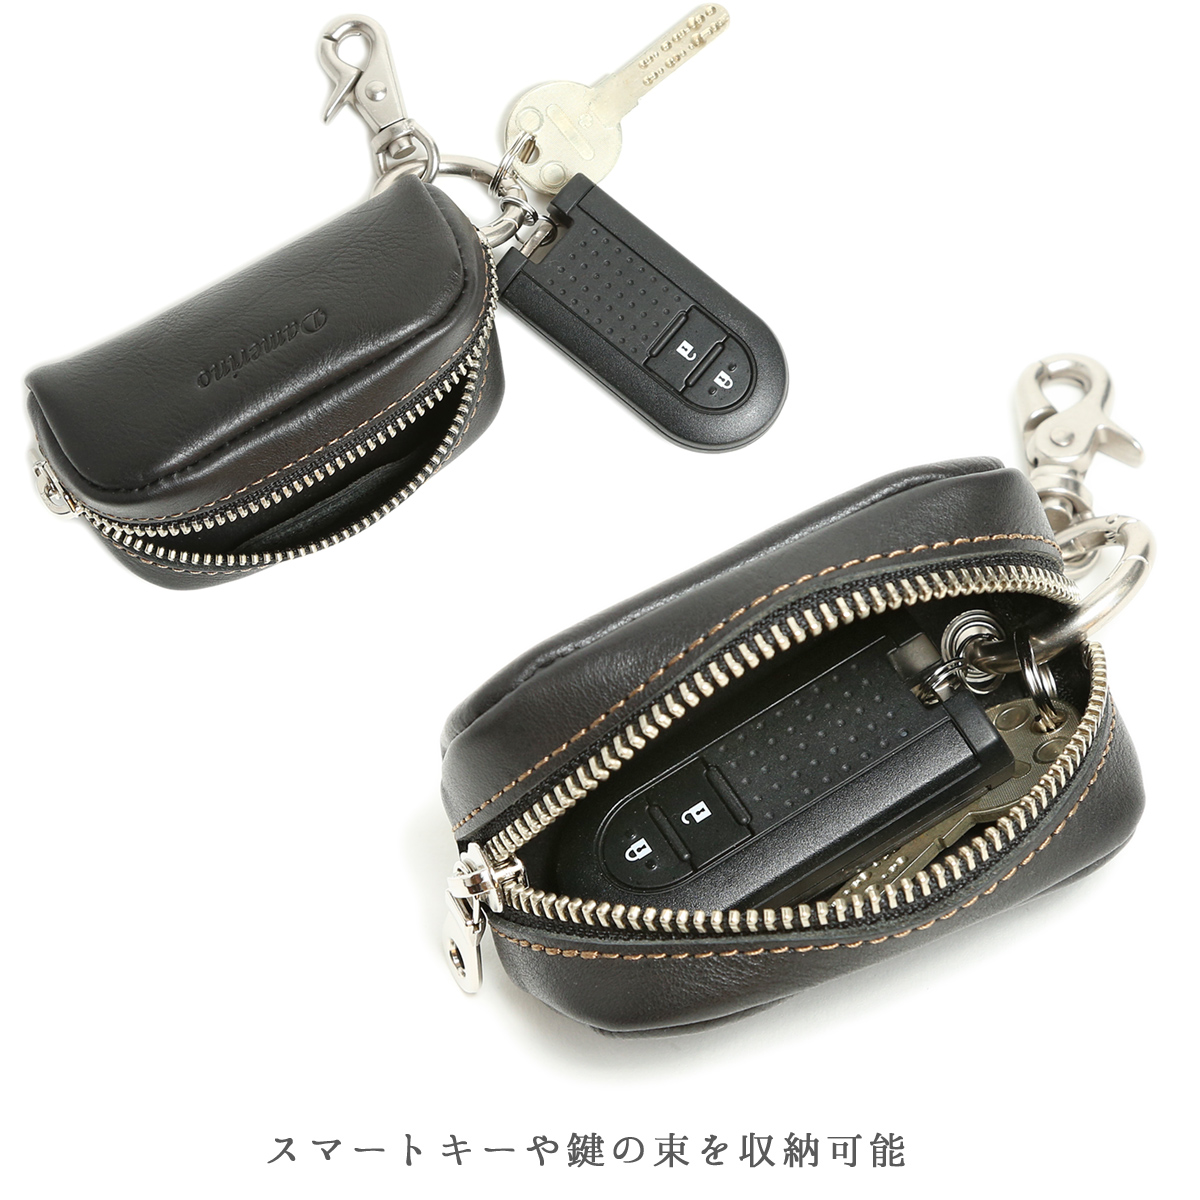 キーケース メンズ レディース 本革 日本製 車 鍵 スマートキー キーホルダー マルチケース コンパクト おしゃれ かわいい